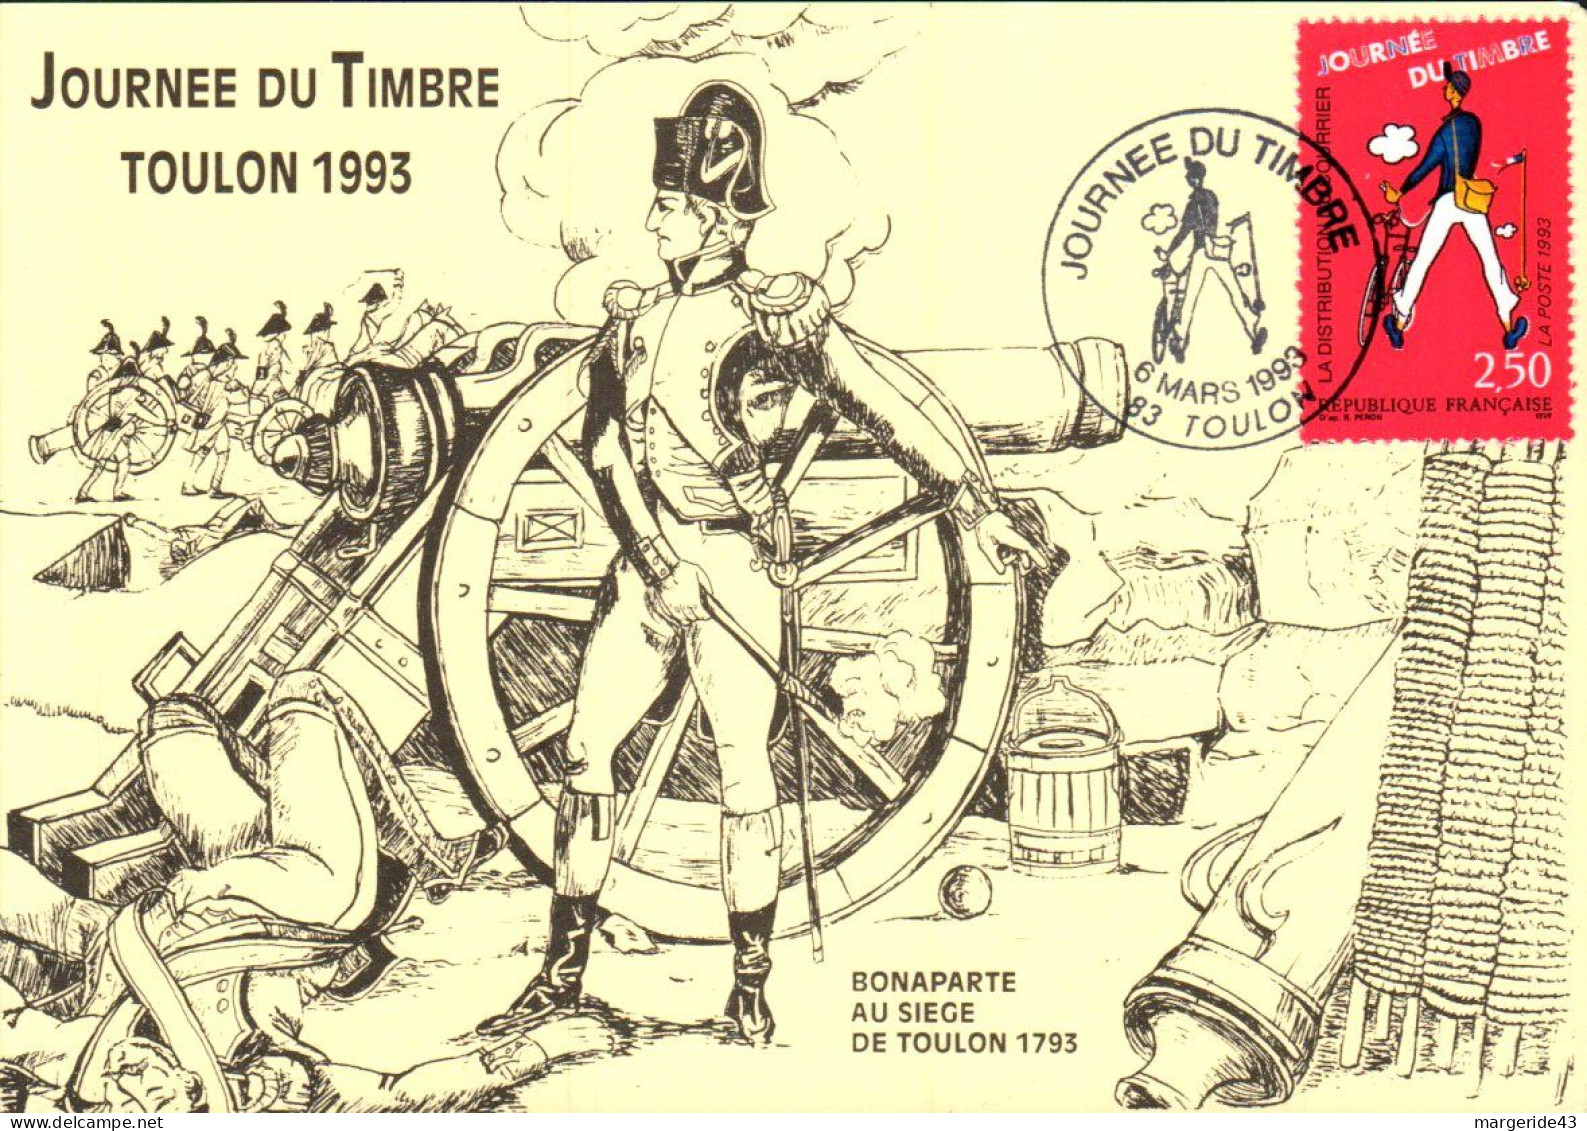 JOURNEE DU TIMBRE 1993 BONAPARTE AU SIEGE DE TOULON - Commemorative Postmarks